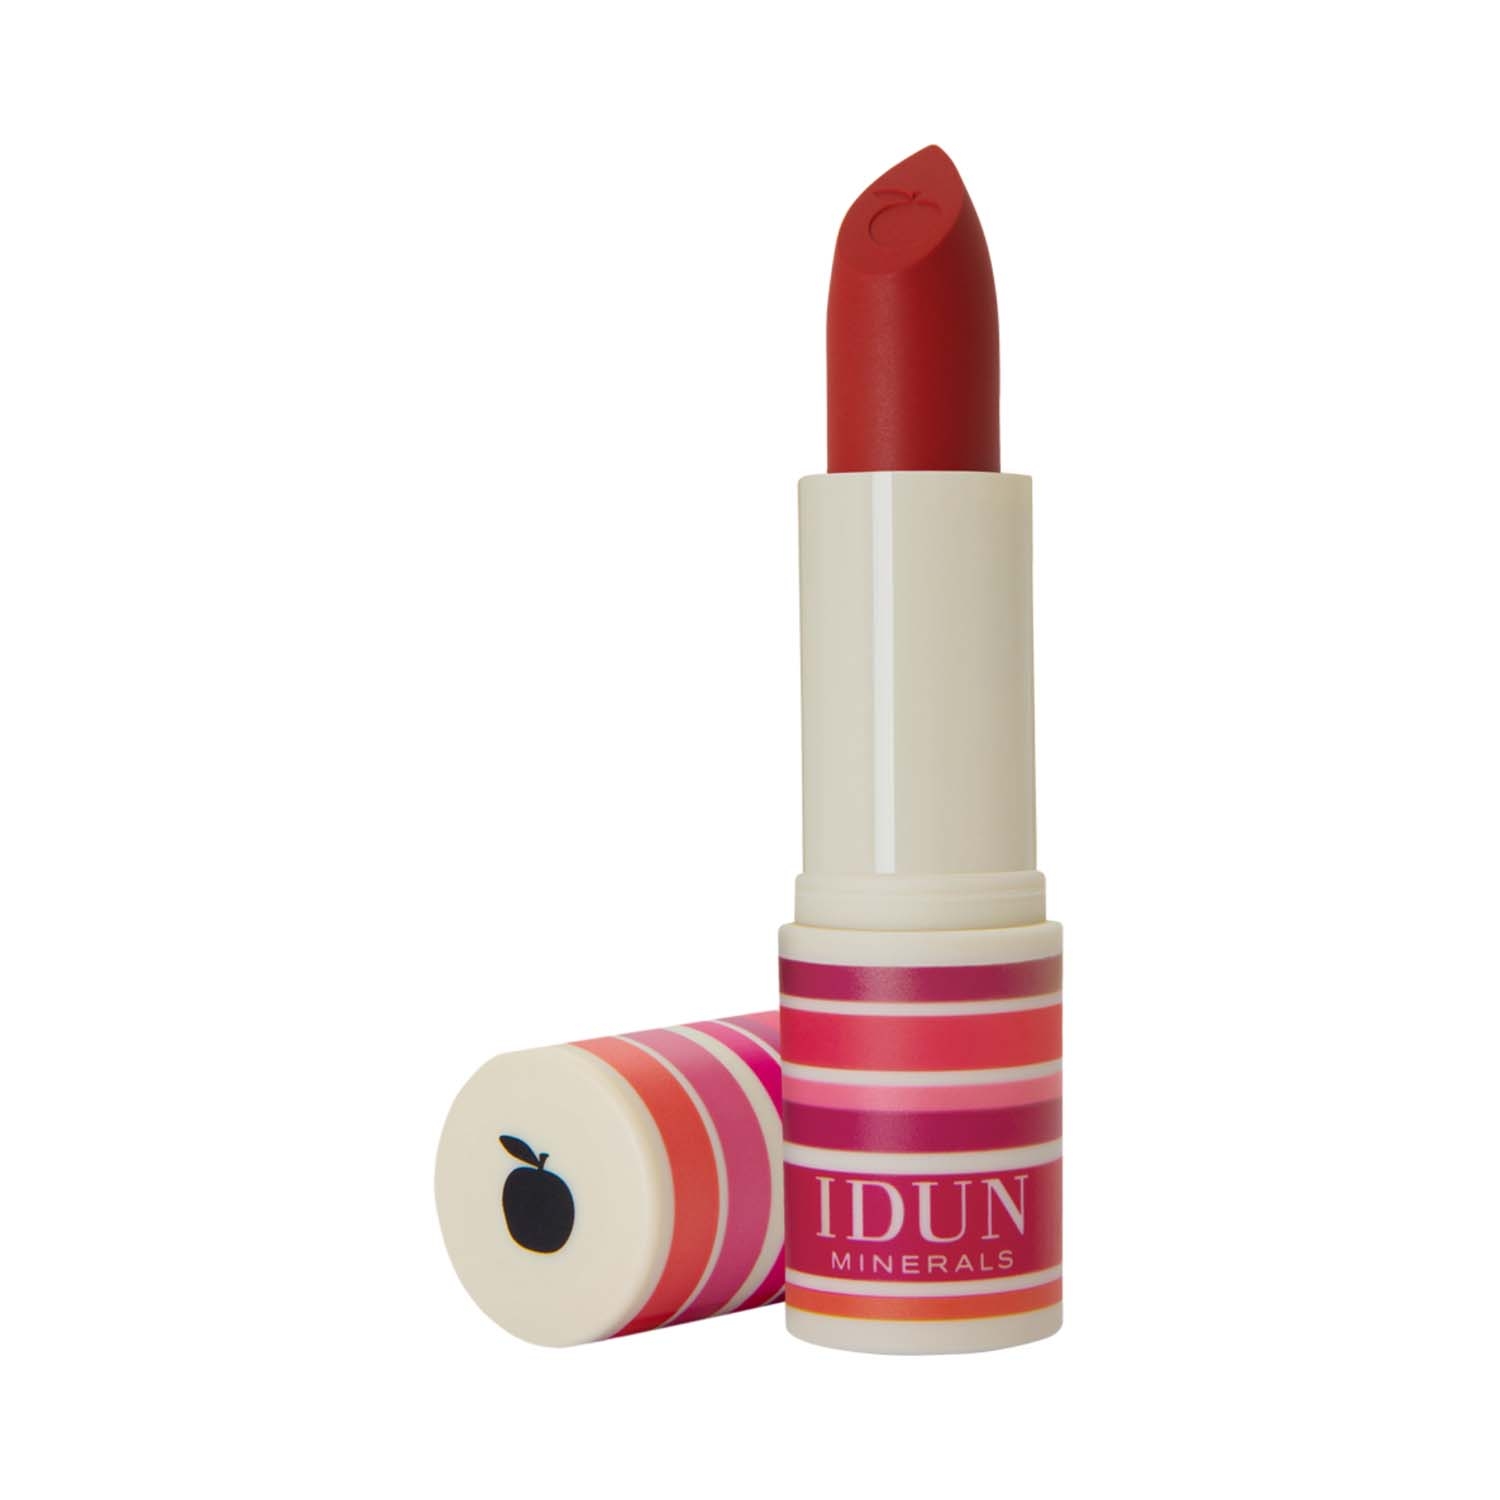 IDUN Minerals | IDUN Minerals Matte Lipstick - Jordgubb (4g)